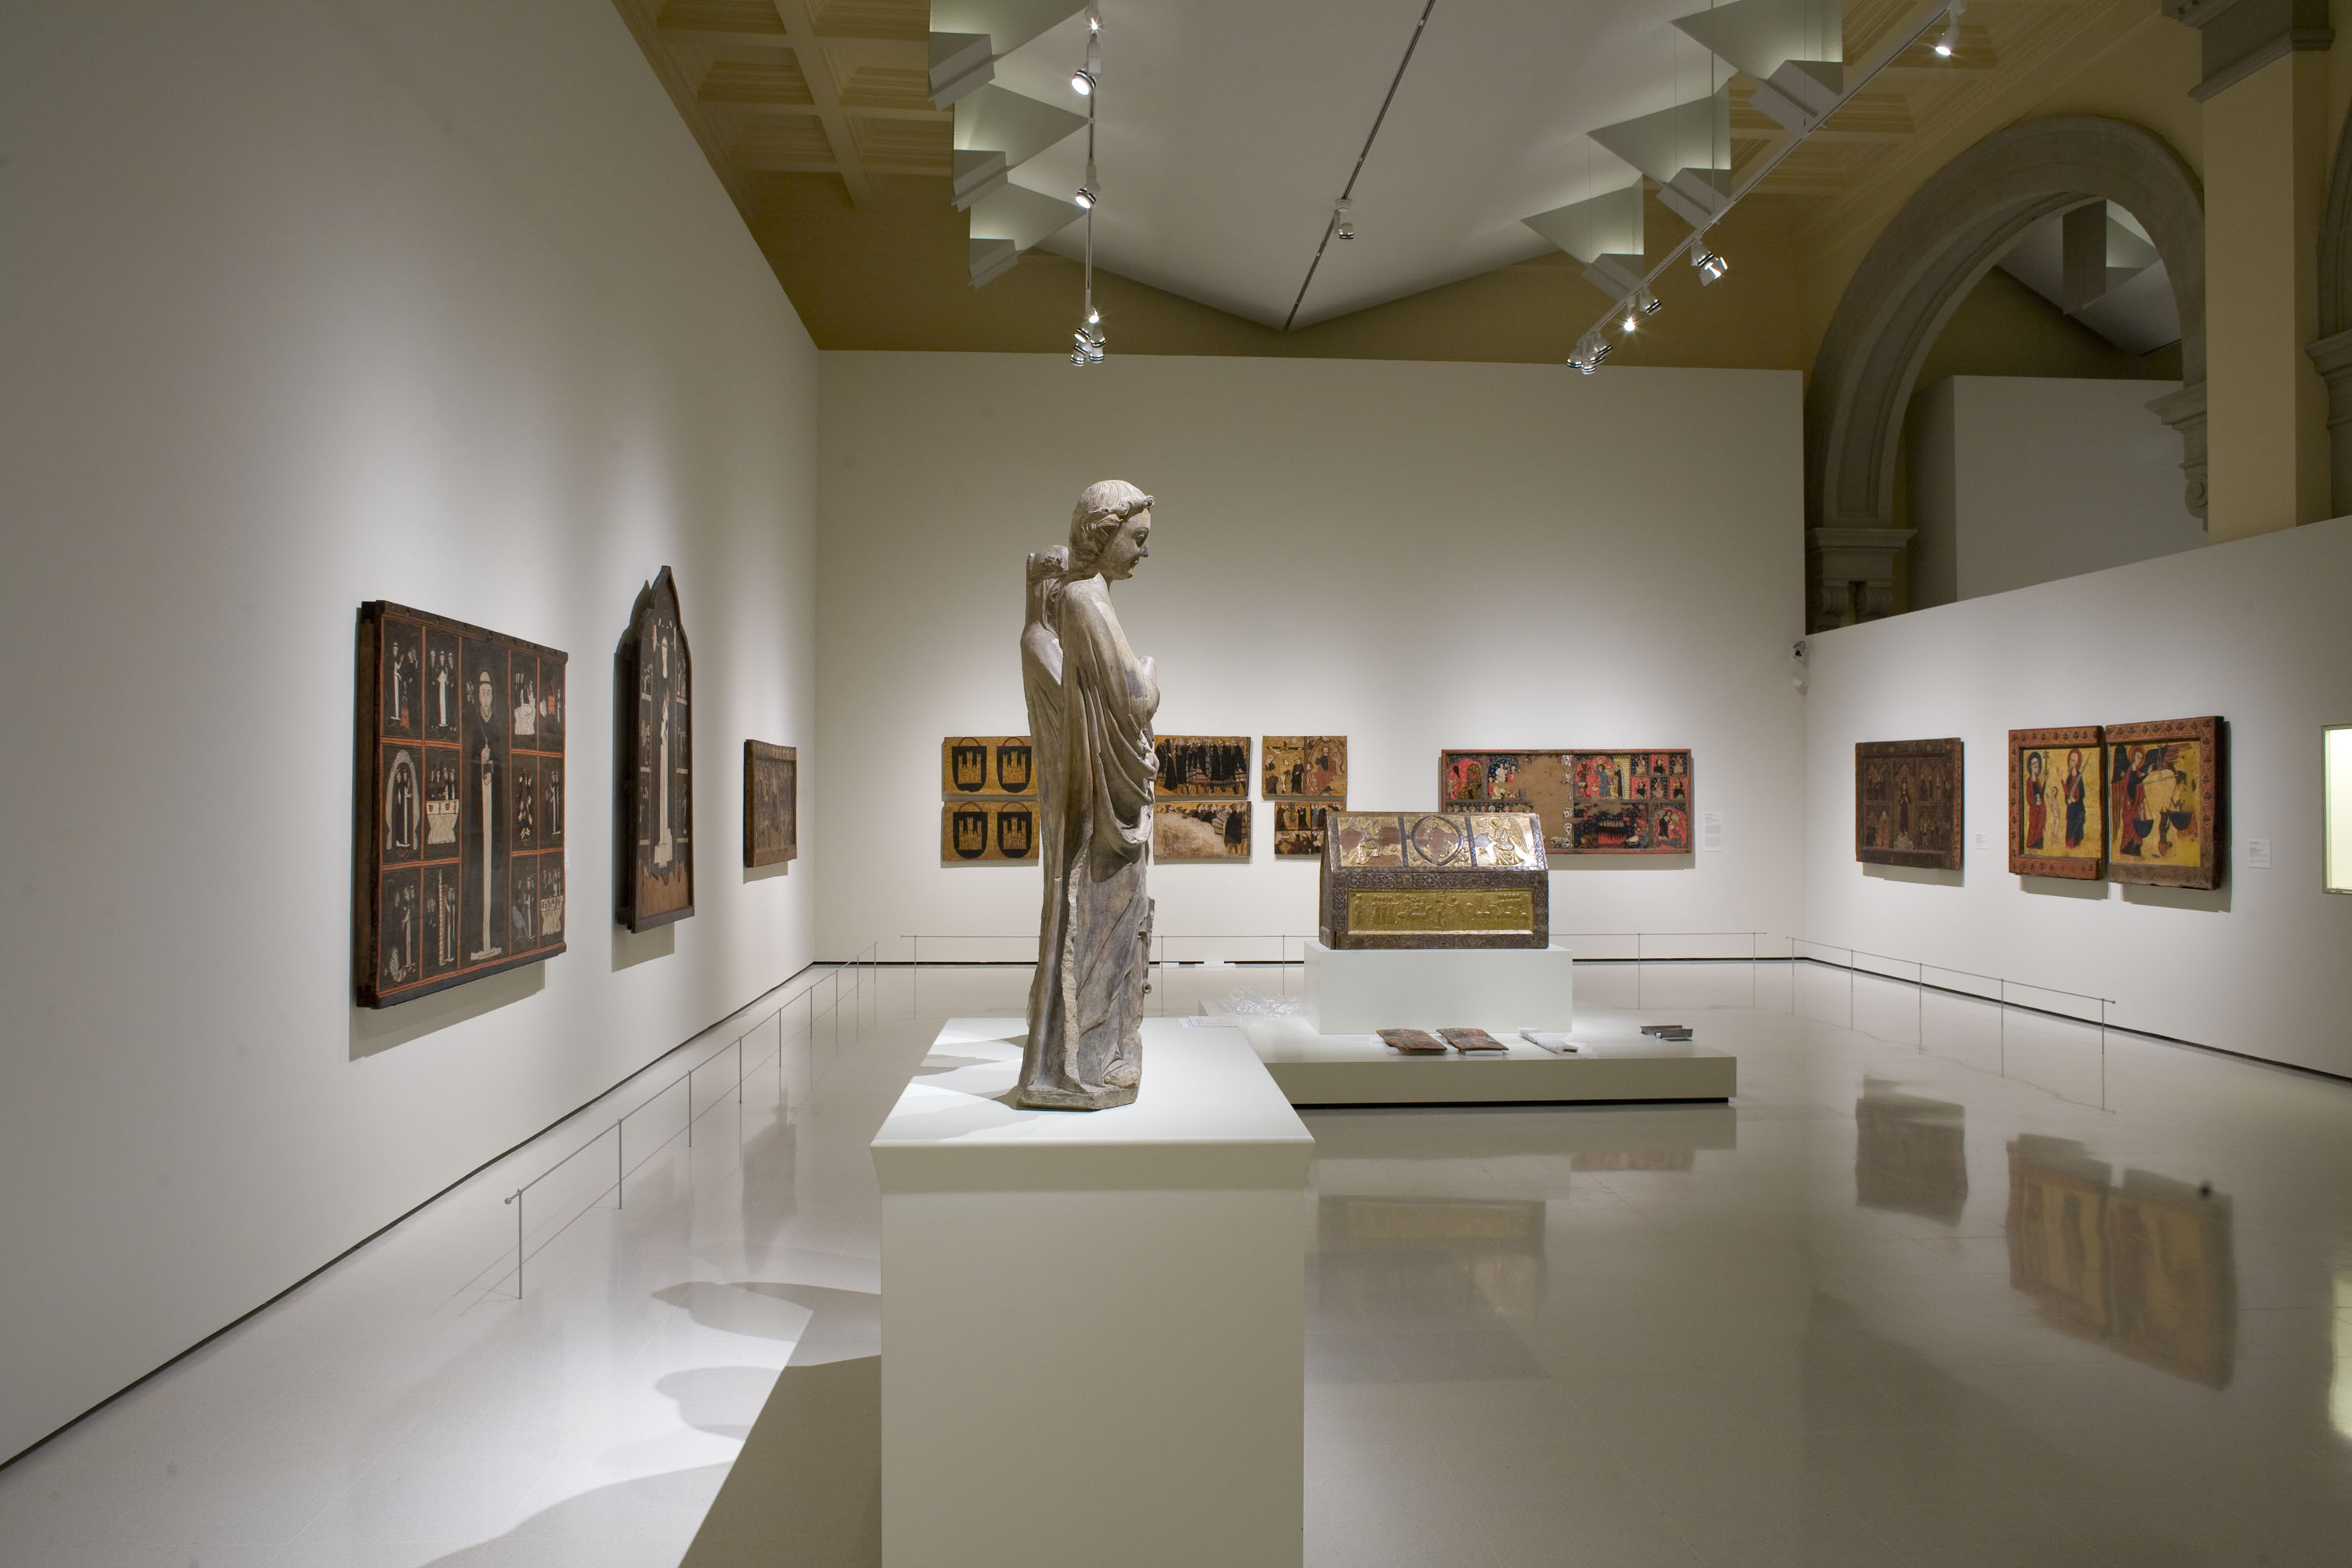 Gothic Art rooms of the Museu Nacional 